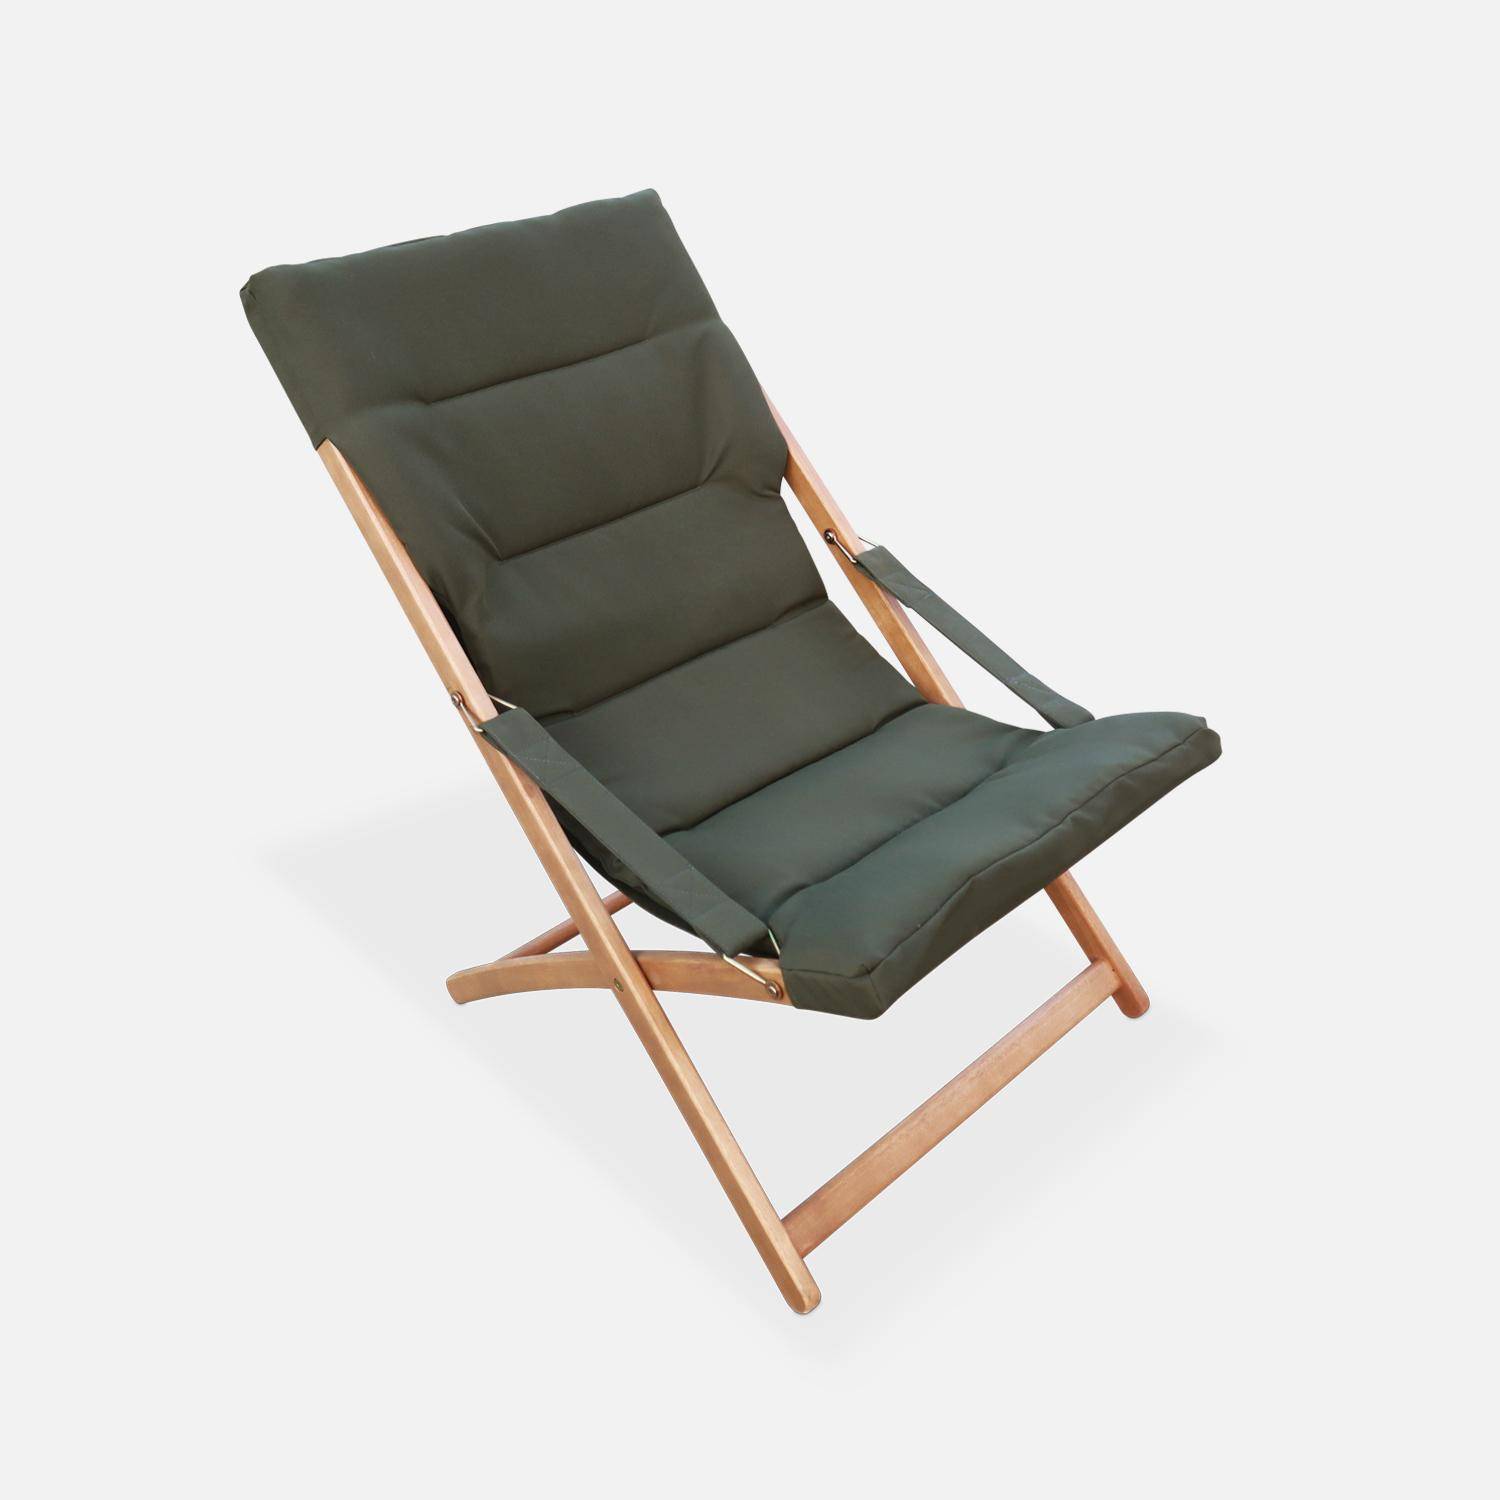 2er Set khaki Liegestühle aus Eukalyptusholz, zusammenklappbar, gepolsterte Sitzfläche - Vigo,sweeek,Photo4